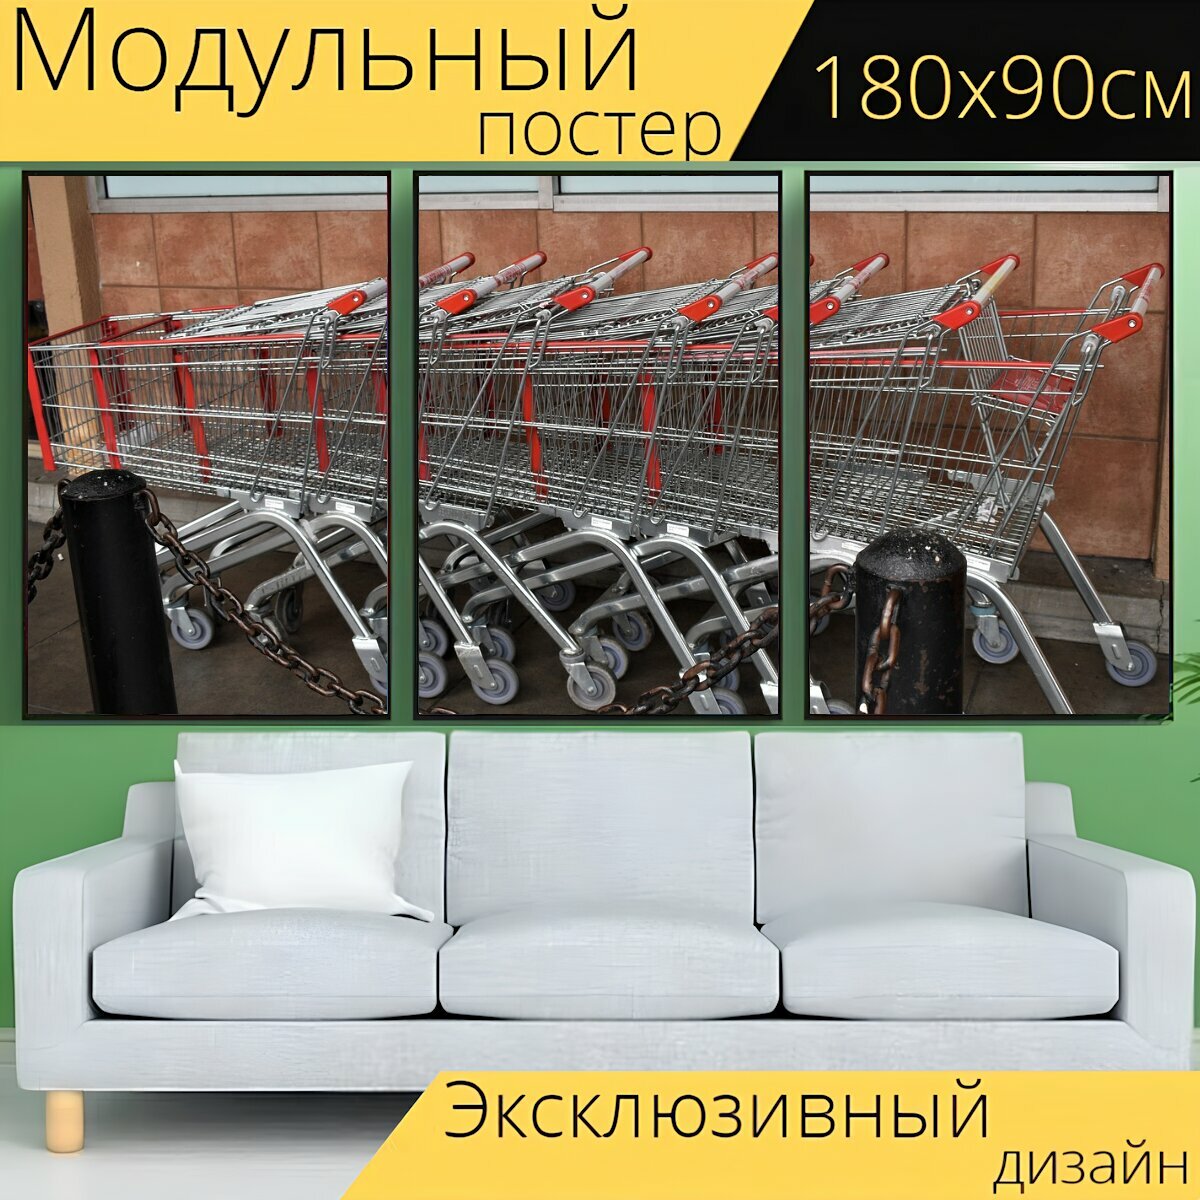 Модульный постер "Корзина, поход по магазинам, супермаркет" 180 x 90 см. для интерьера